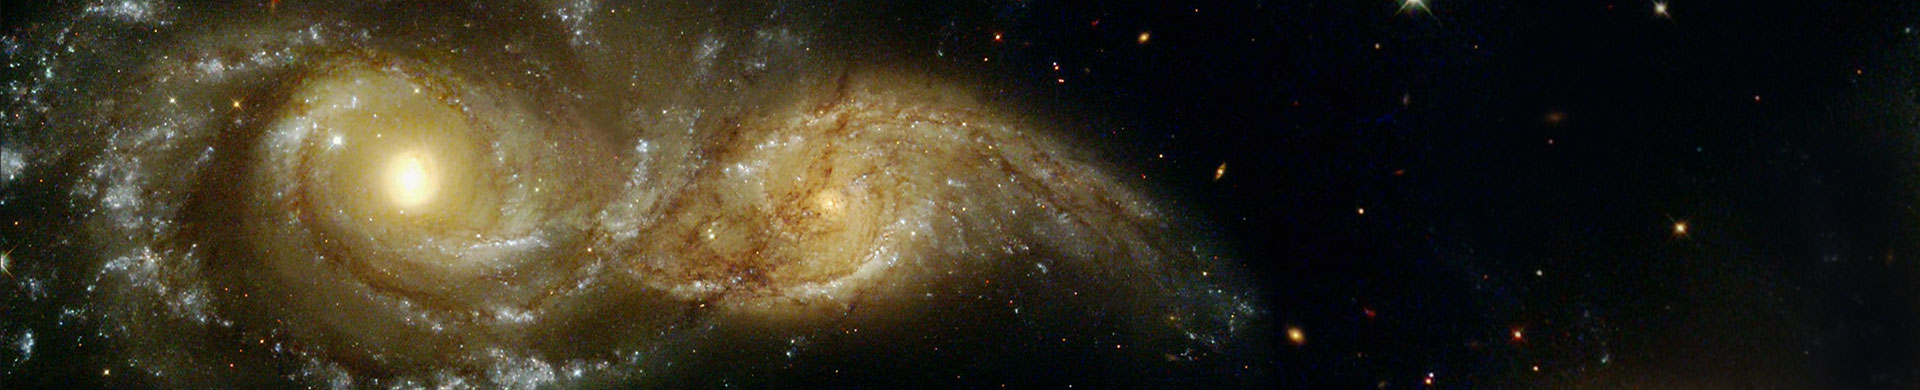 זוג גלקסיות ספירליות שכמעט מתנגשות. צילום: © NASA and the Space Telescope Science Institute (STScI).